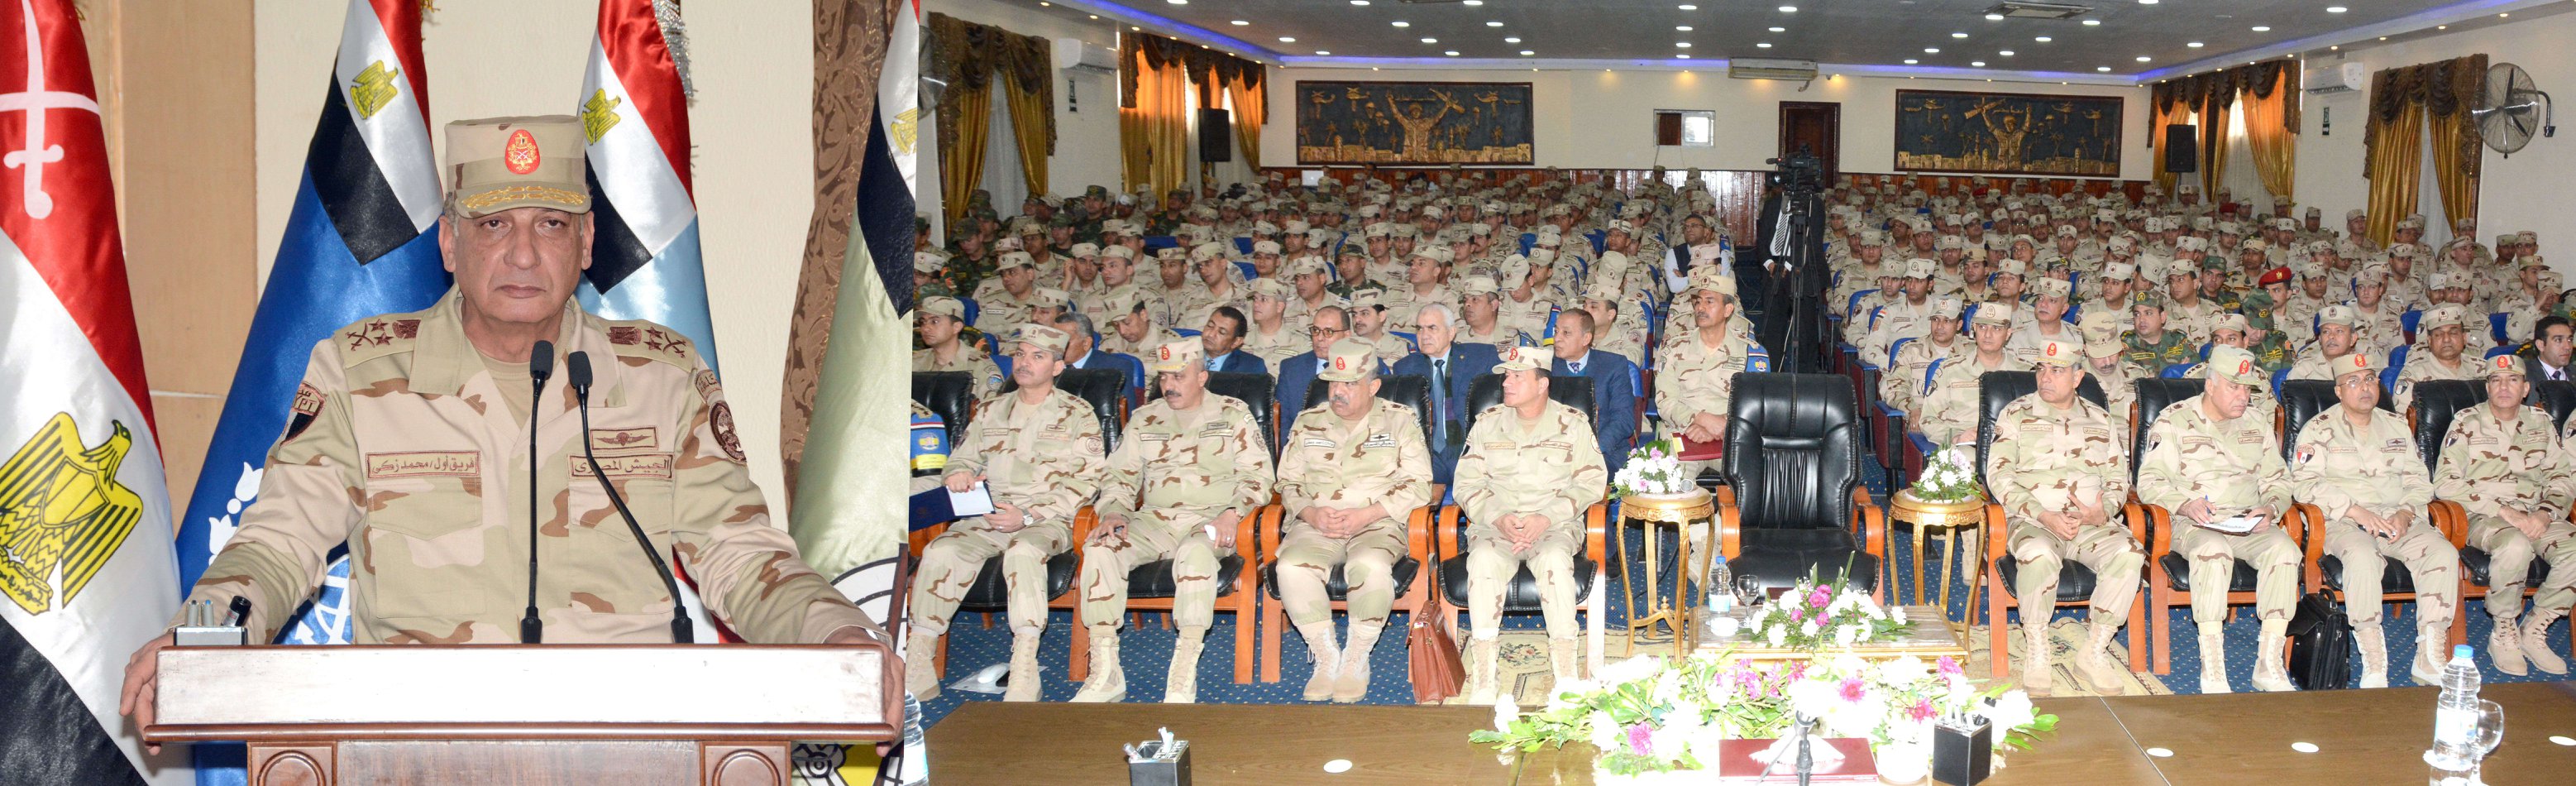   وزير الدفاع يتفقد المنظومة التعليمية بالمعاهد التعليمية للقوات المسلحة